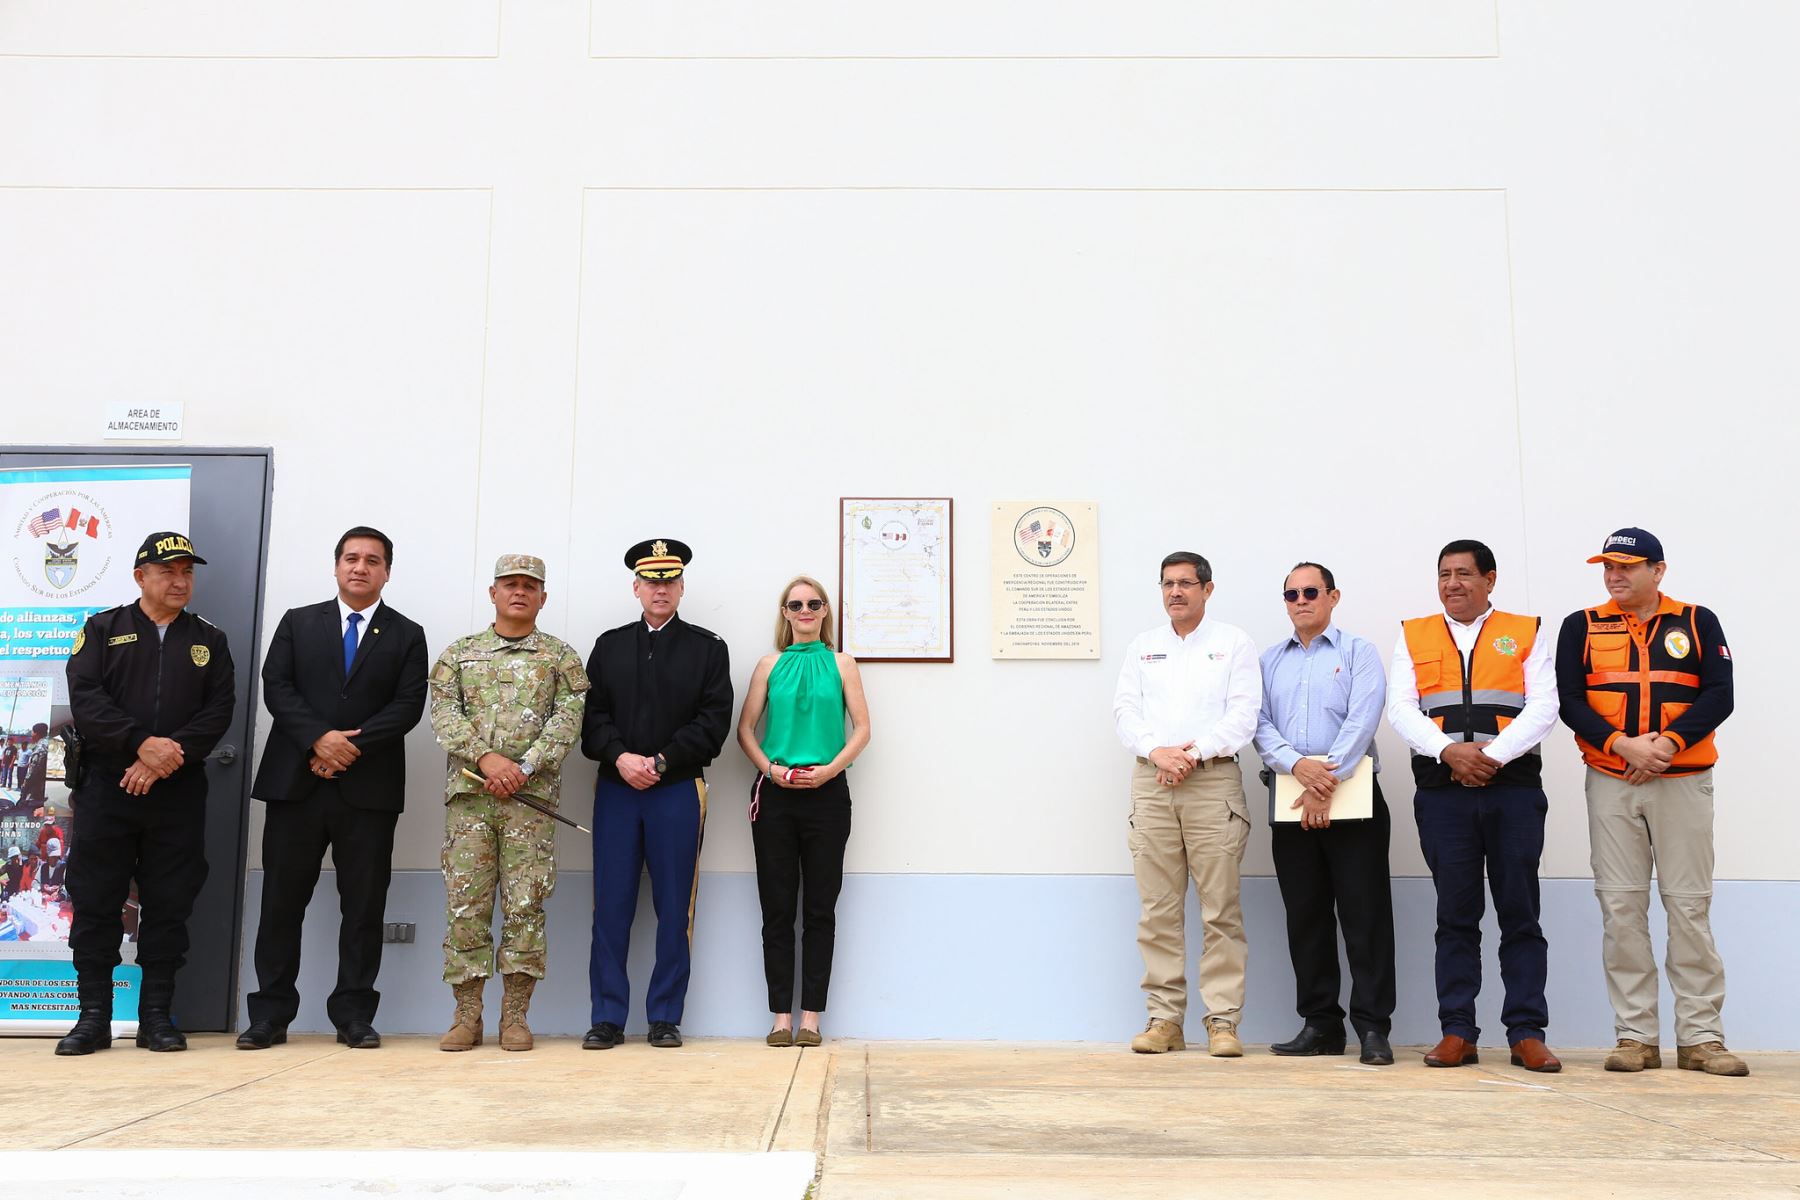 Develamiento de placa de inauguración del nuevo Centro de Operaciones de Emergencia Regional COER Amazonas en Chachapoyas, con la participación del ministro de Defensa, Jorge Chávez, y la embajadora de EE.UU. en Perú, Lisa Kenna. Foto: ANDINA/Mindef